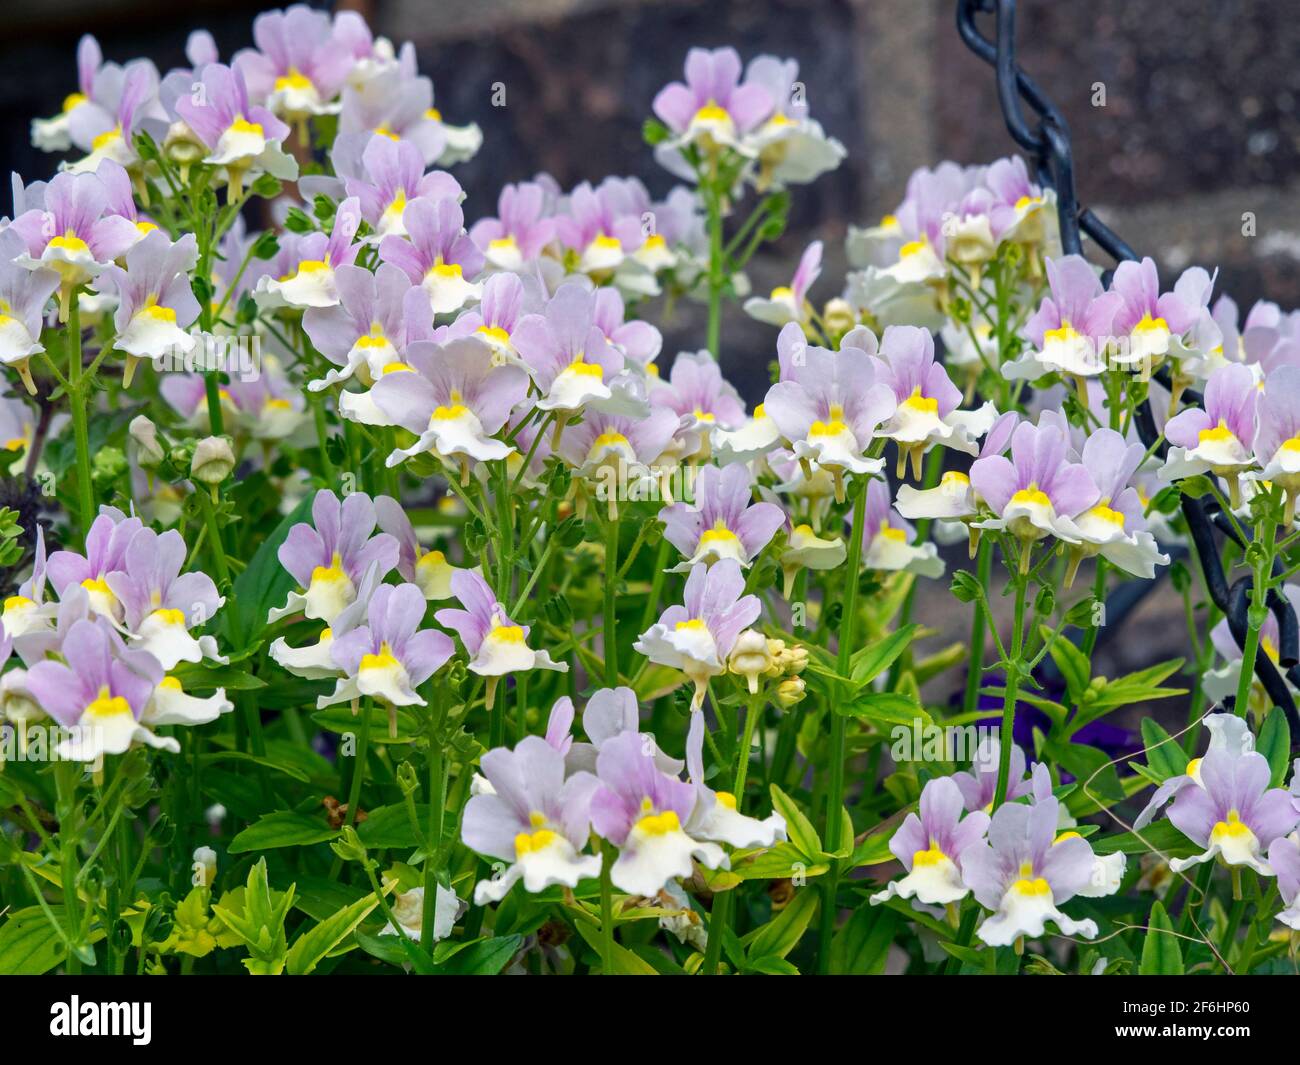 Pretty little Nemesia flowers, variety Easter Bonnet Stock Photo